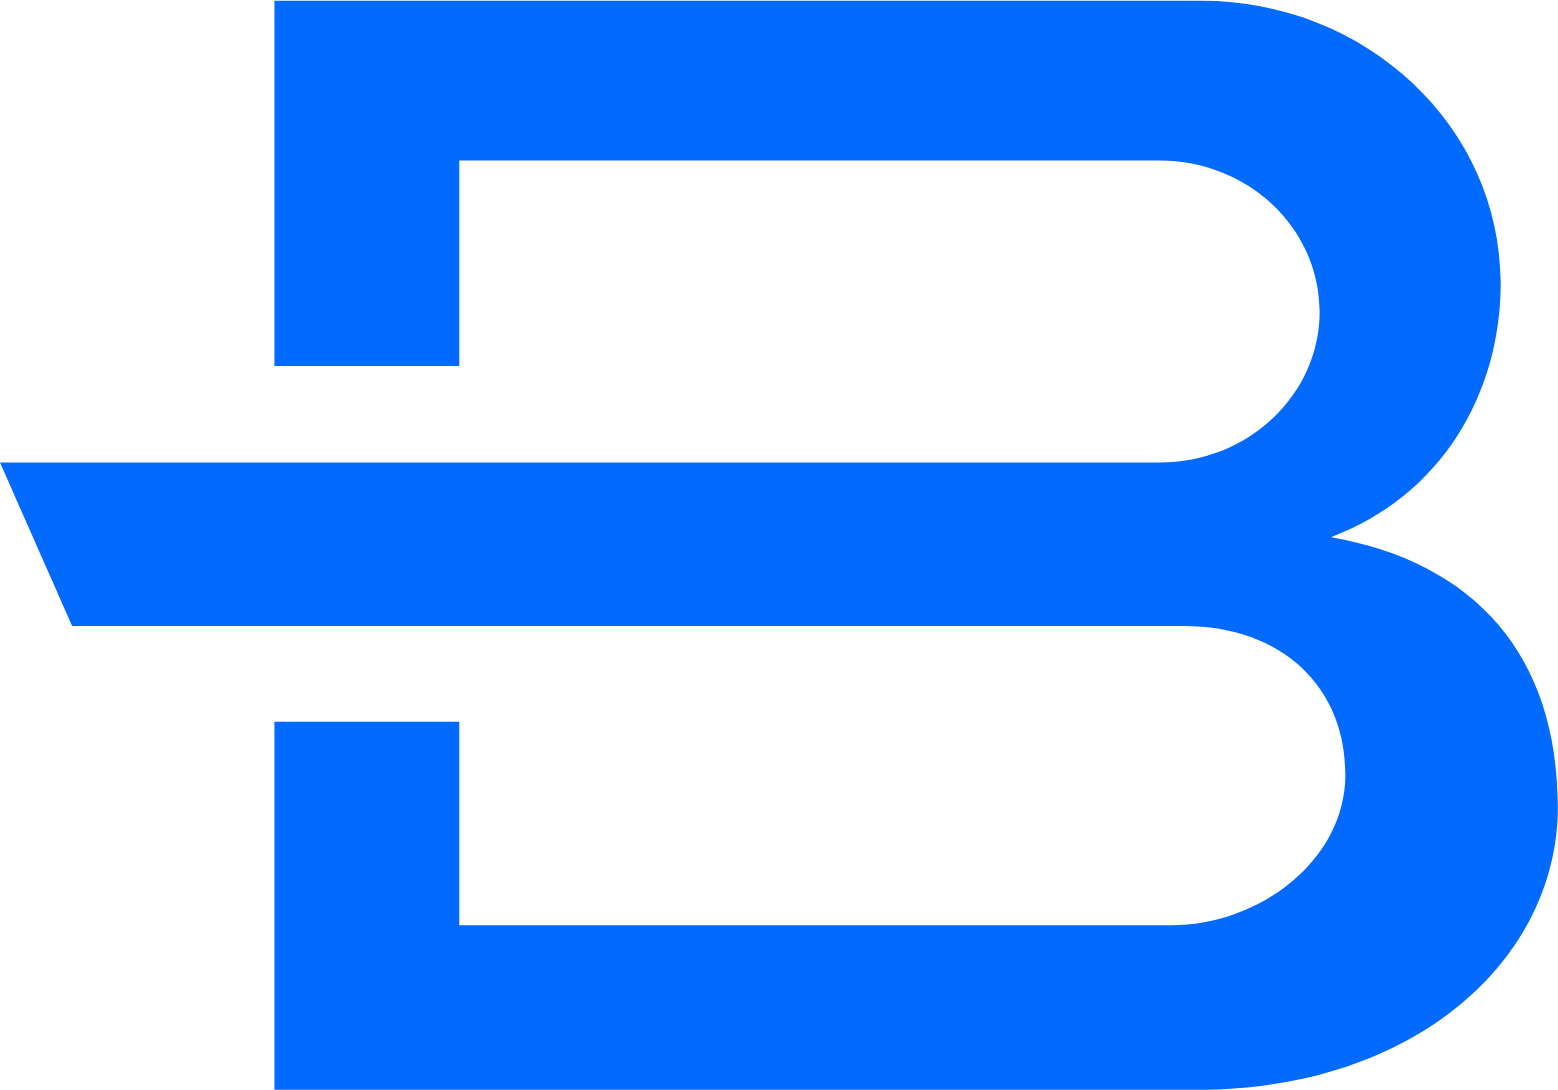 Brunswick Corporation logo (PNG transparent)